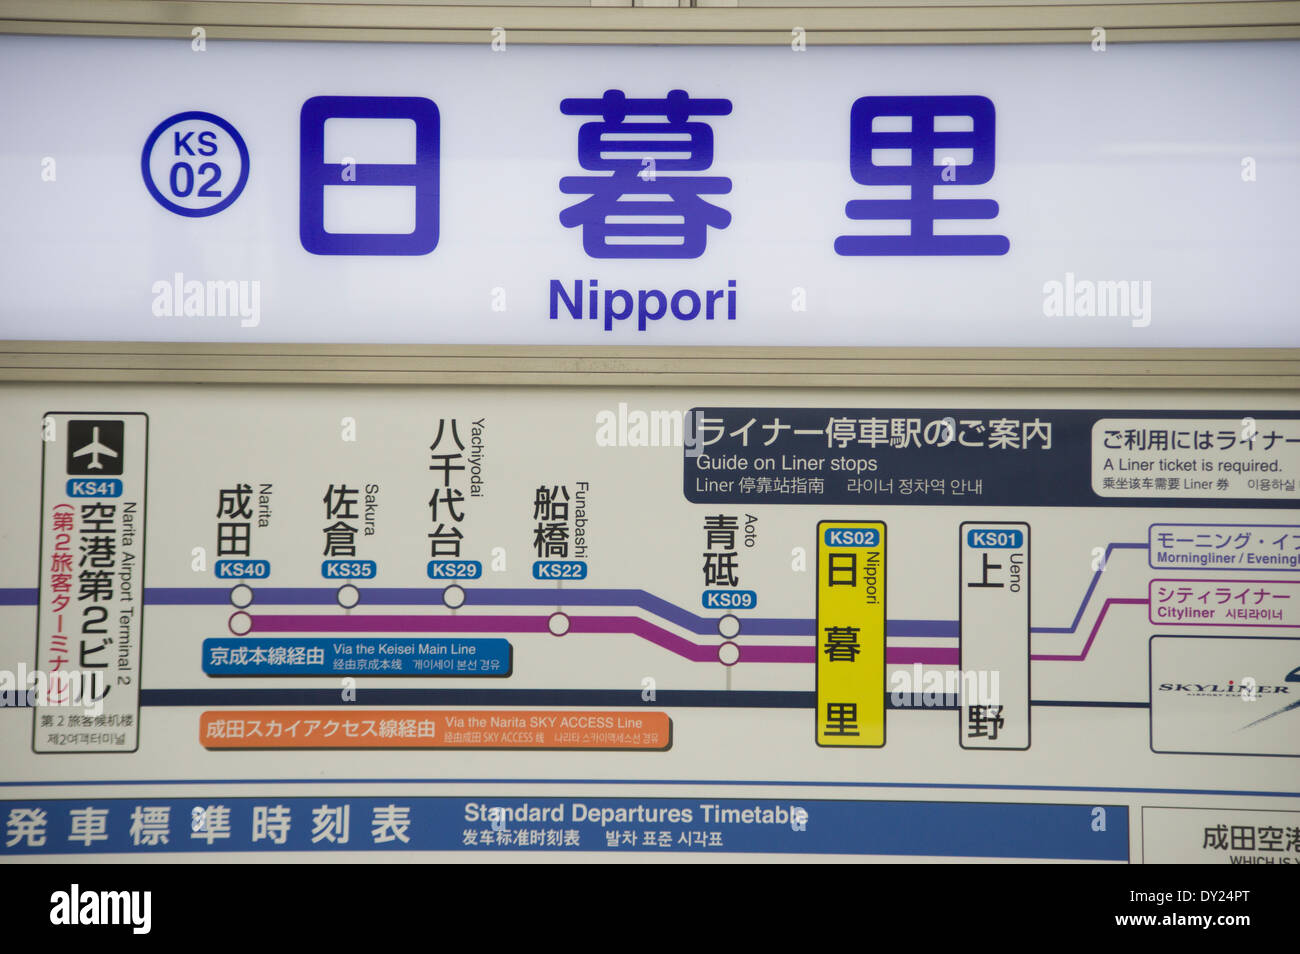 Bahnsteig Bahnhof Nippori Zeichen Tokyo Japan Kanjisymbole und zweisprachige Übersetzung. Verkehrsknotenpunkt Stockfoto